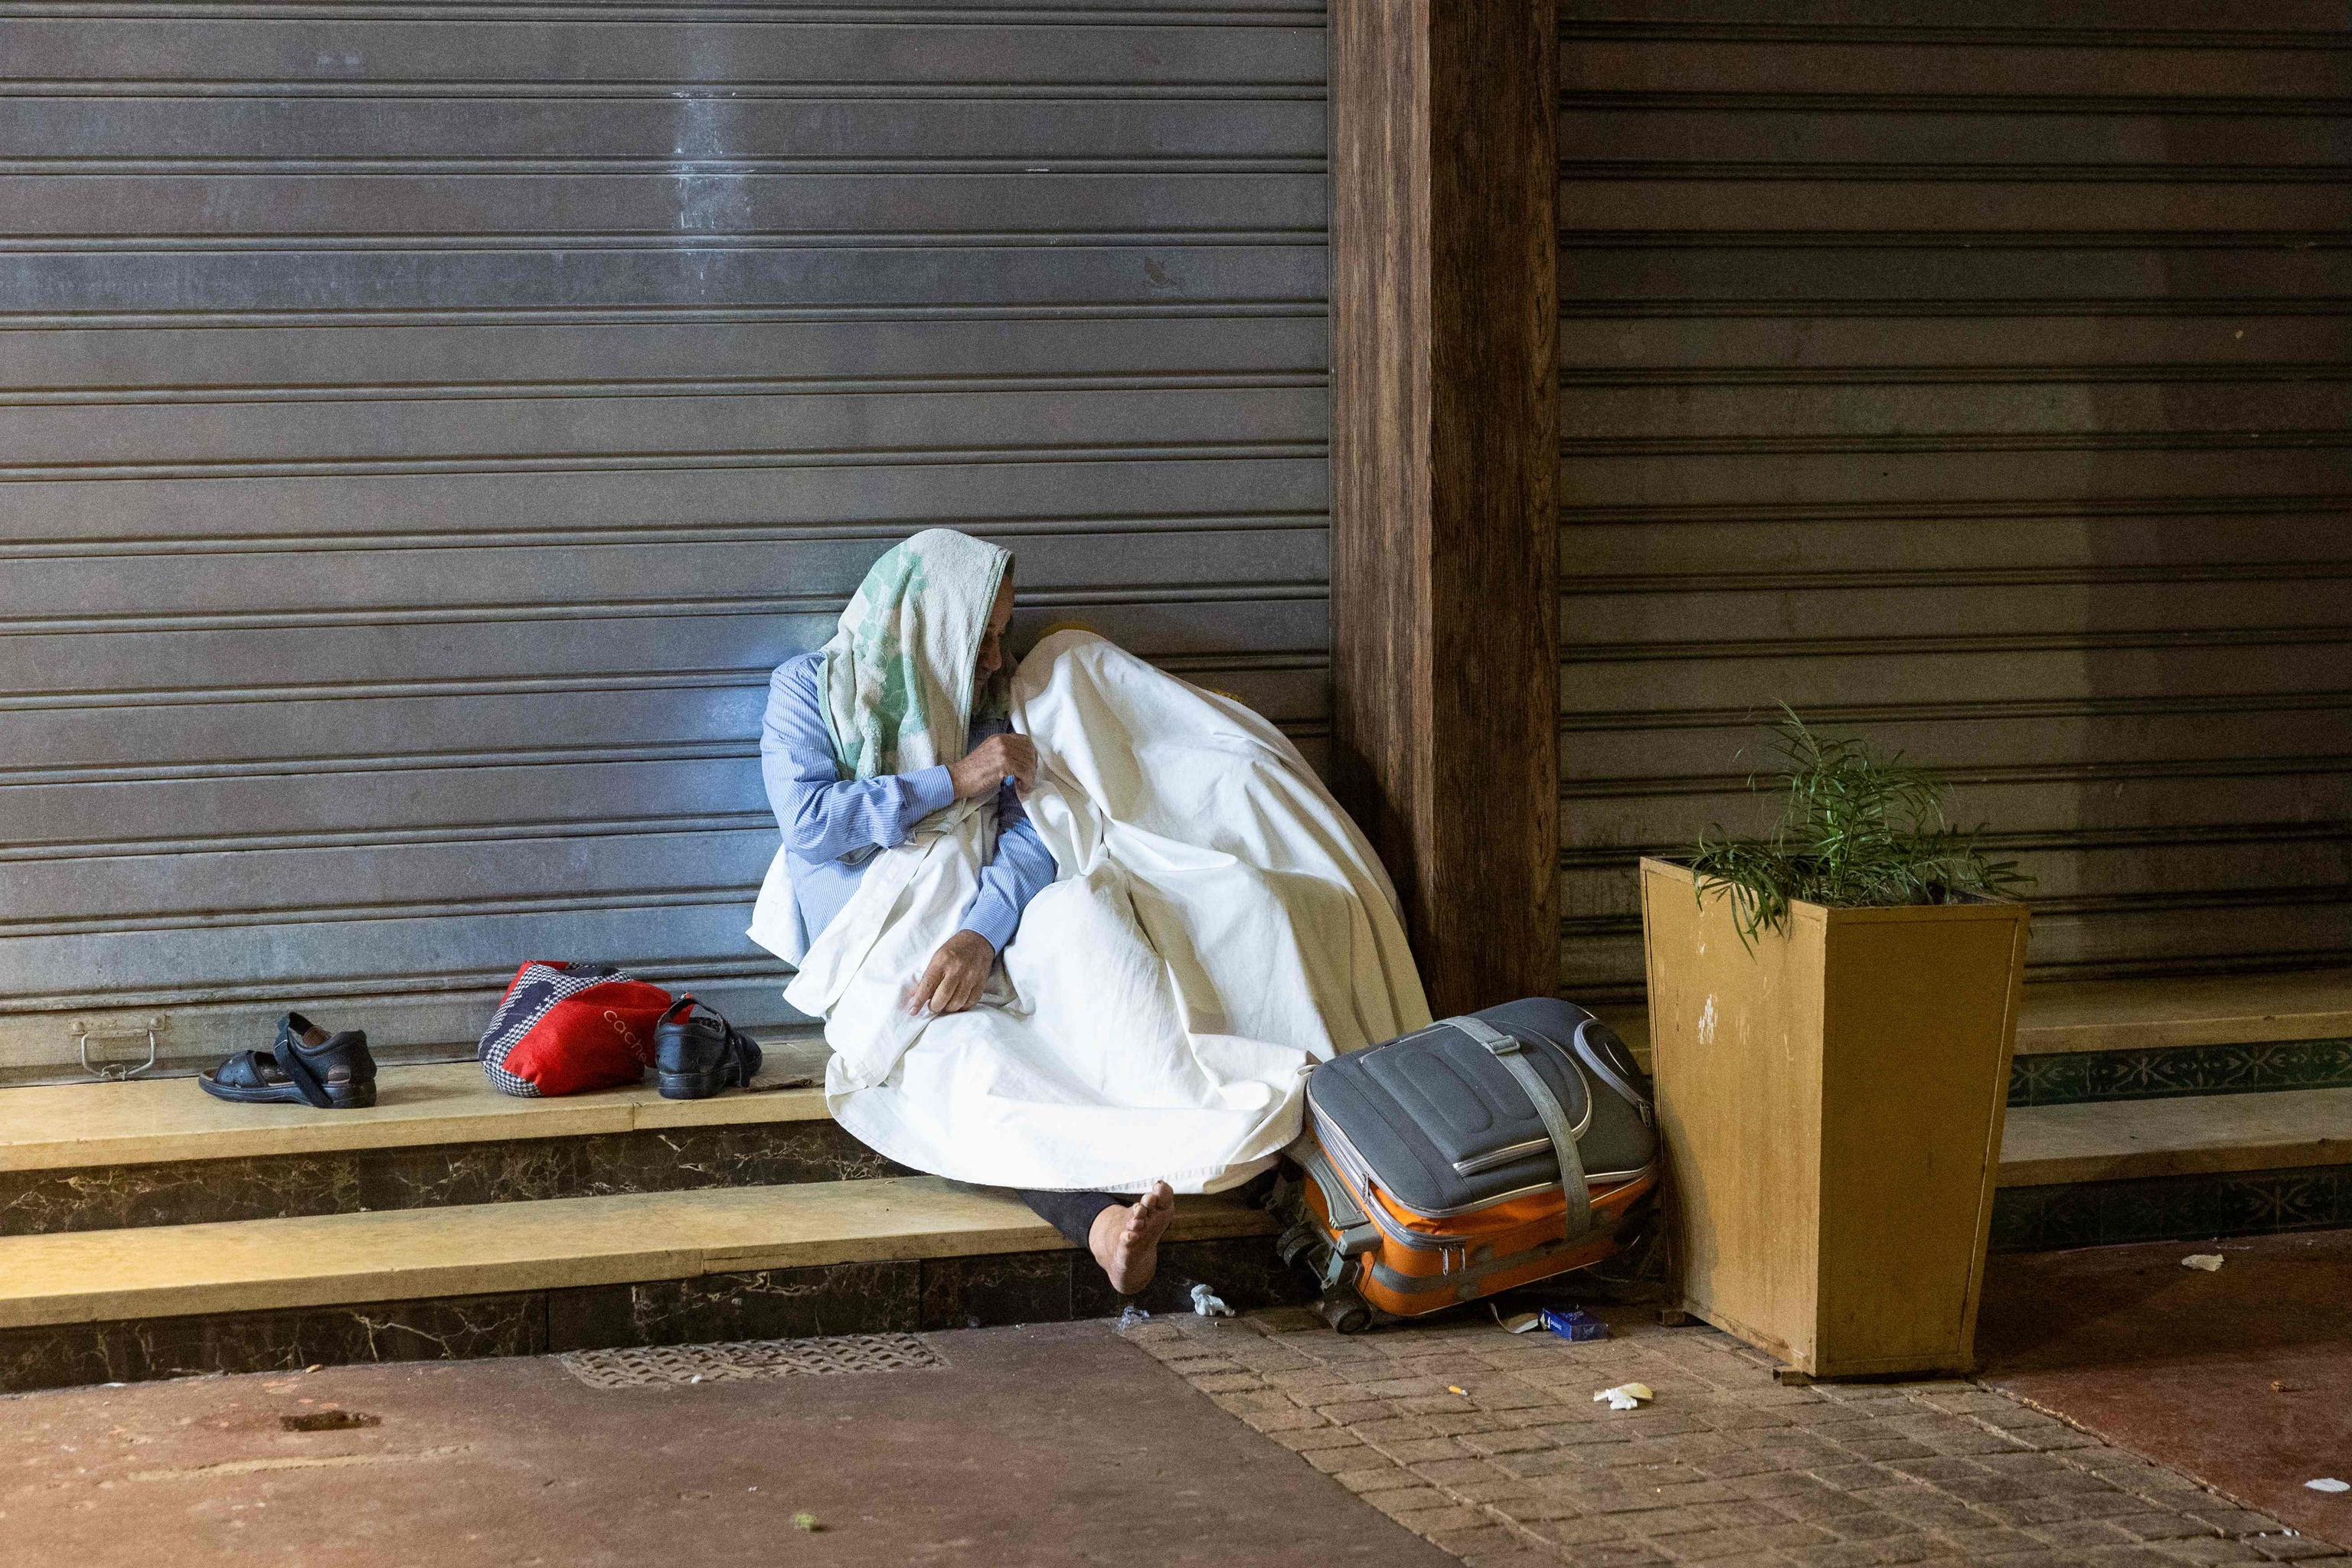 Residentes se refugian junto a tiendas cerradas tras un terremoto en Marrakech el 9 de septiembre de 2023. Cerca de 300 personas murieron tras un fuerte terremoto que sacudi Marruecos el 8 de septiembre por la noche, segn un recuento preliminar del gobierno, y los residentes de Marrakech informaron de gritos "insoportables" tras el sesmo de magnitud 6,8.